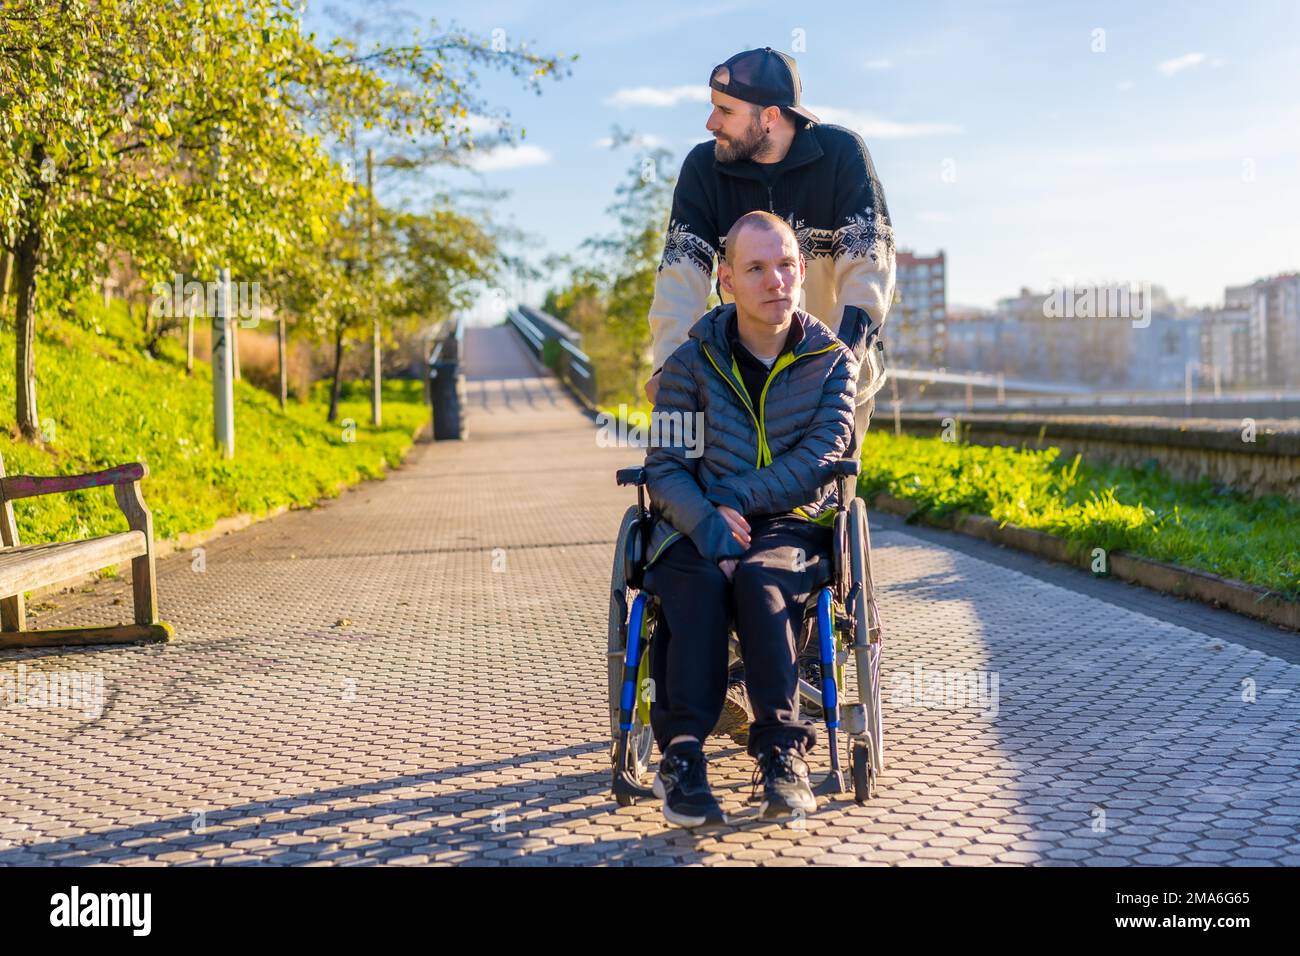 Lächelnde behinderte Person im Rollstuhl, die mit ihrem Bruder in einem Park läuft Stockfoto